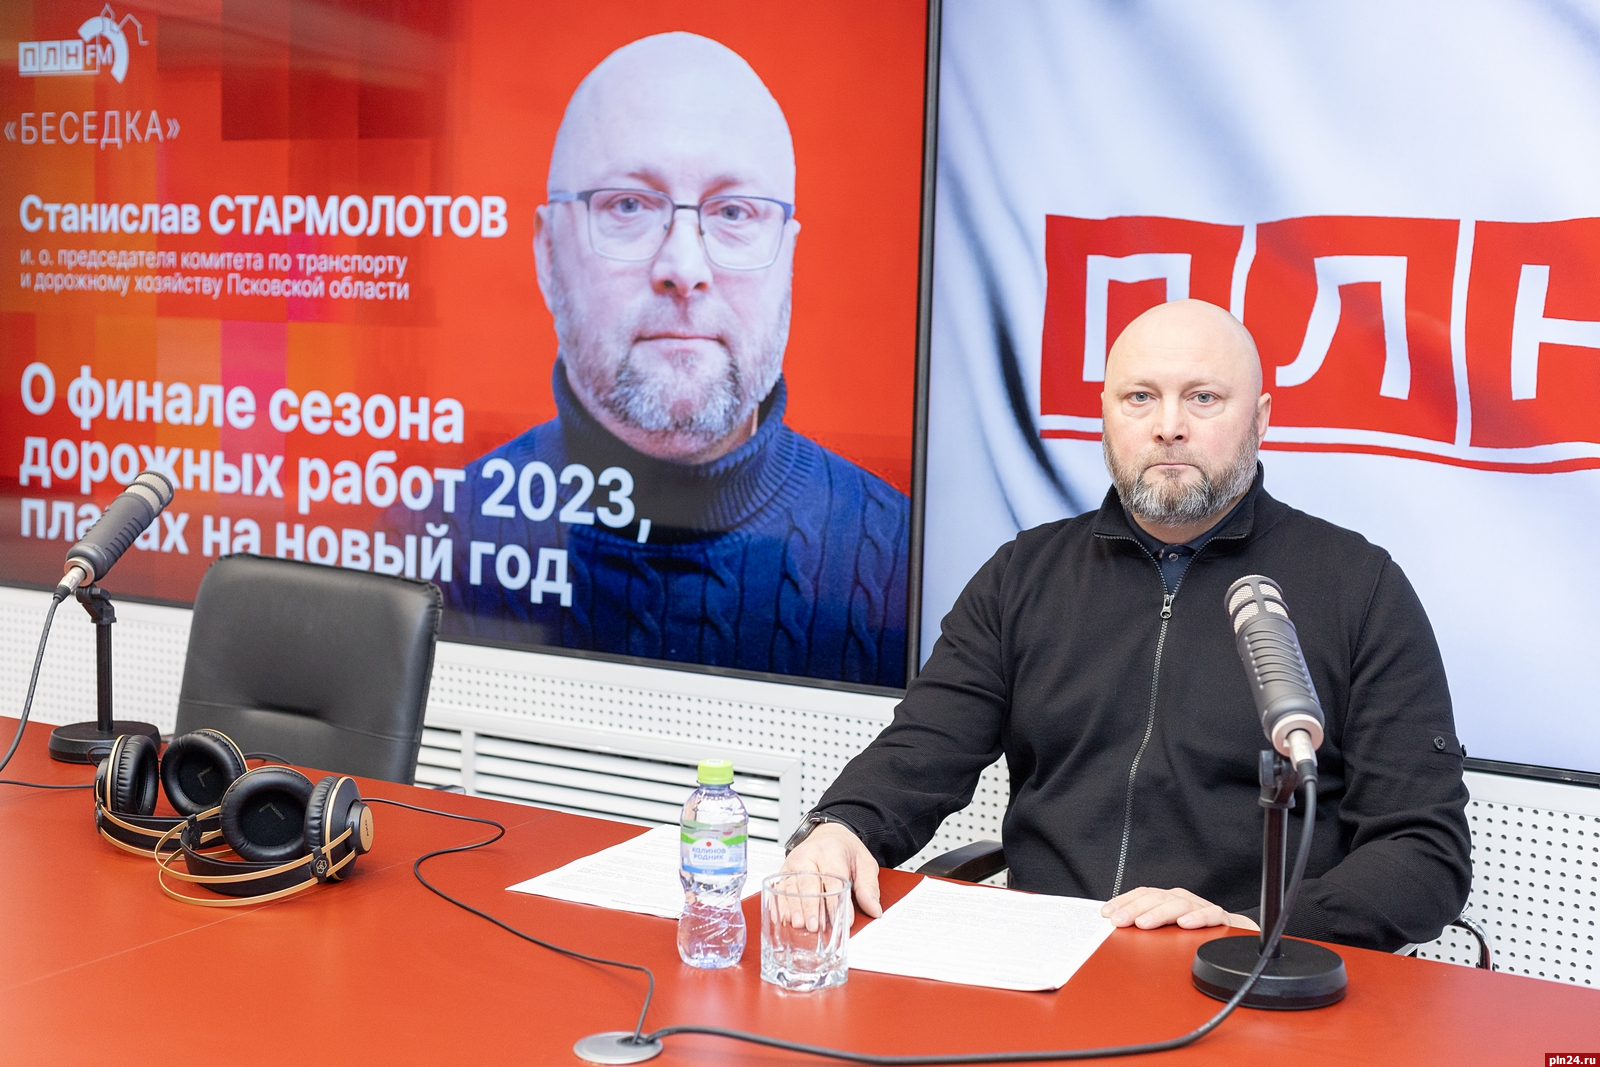 Тенденция к увеличению дорожного фонда наблюдается в Псковской области - Станислав Стармолотов